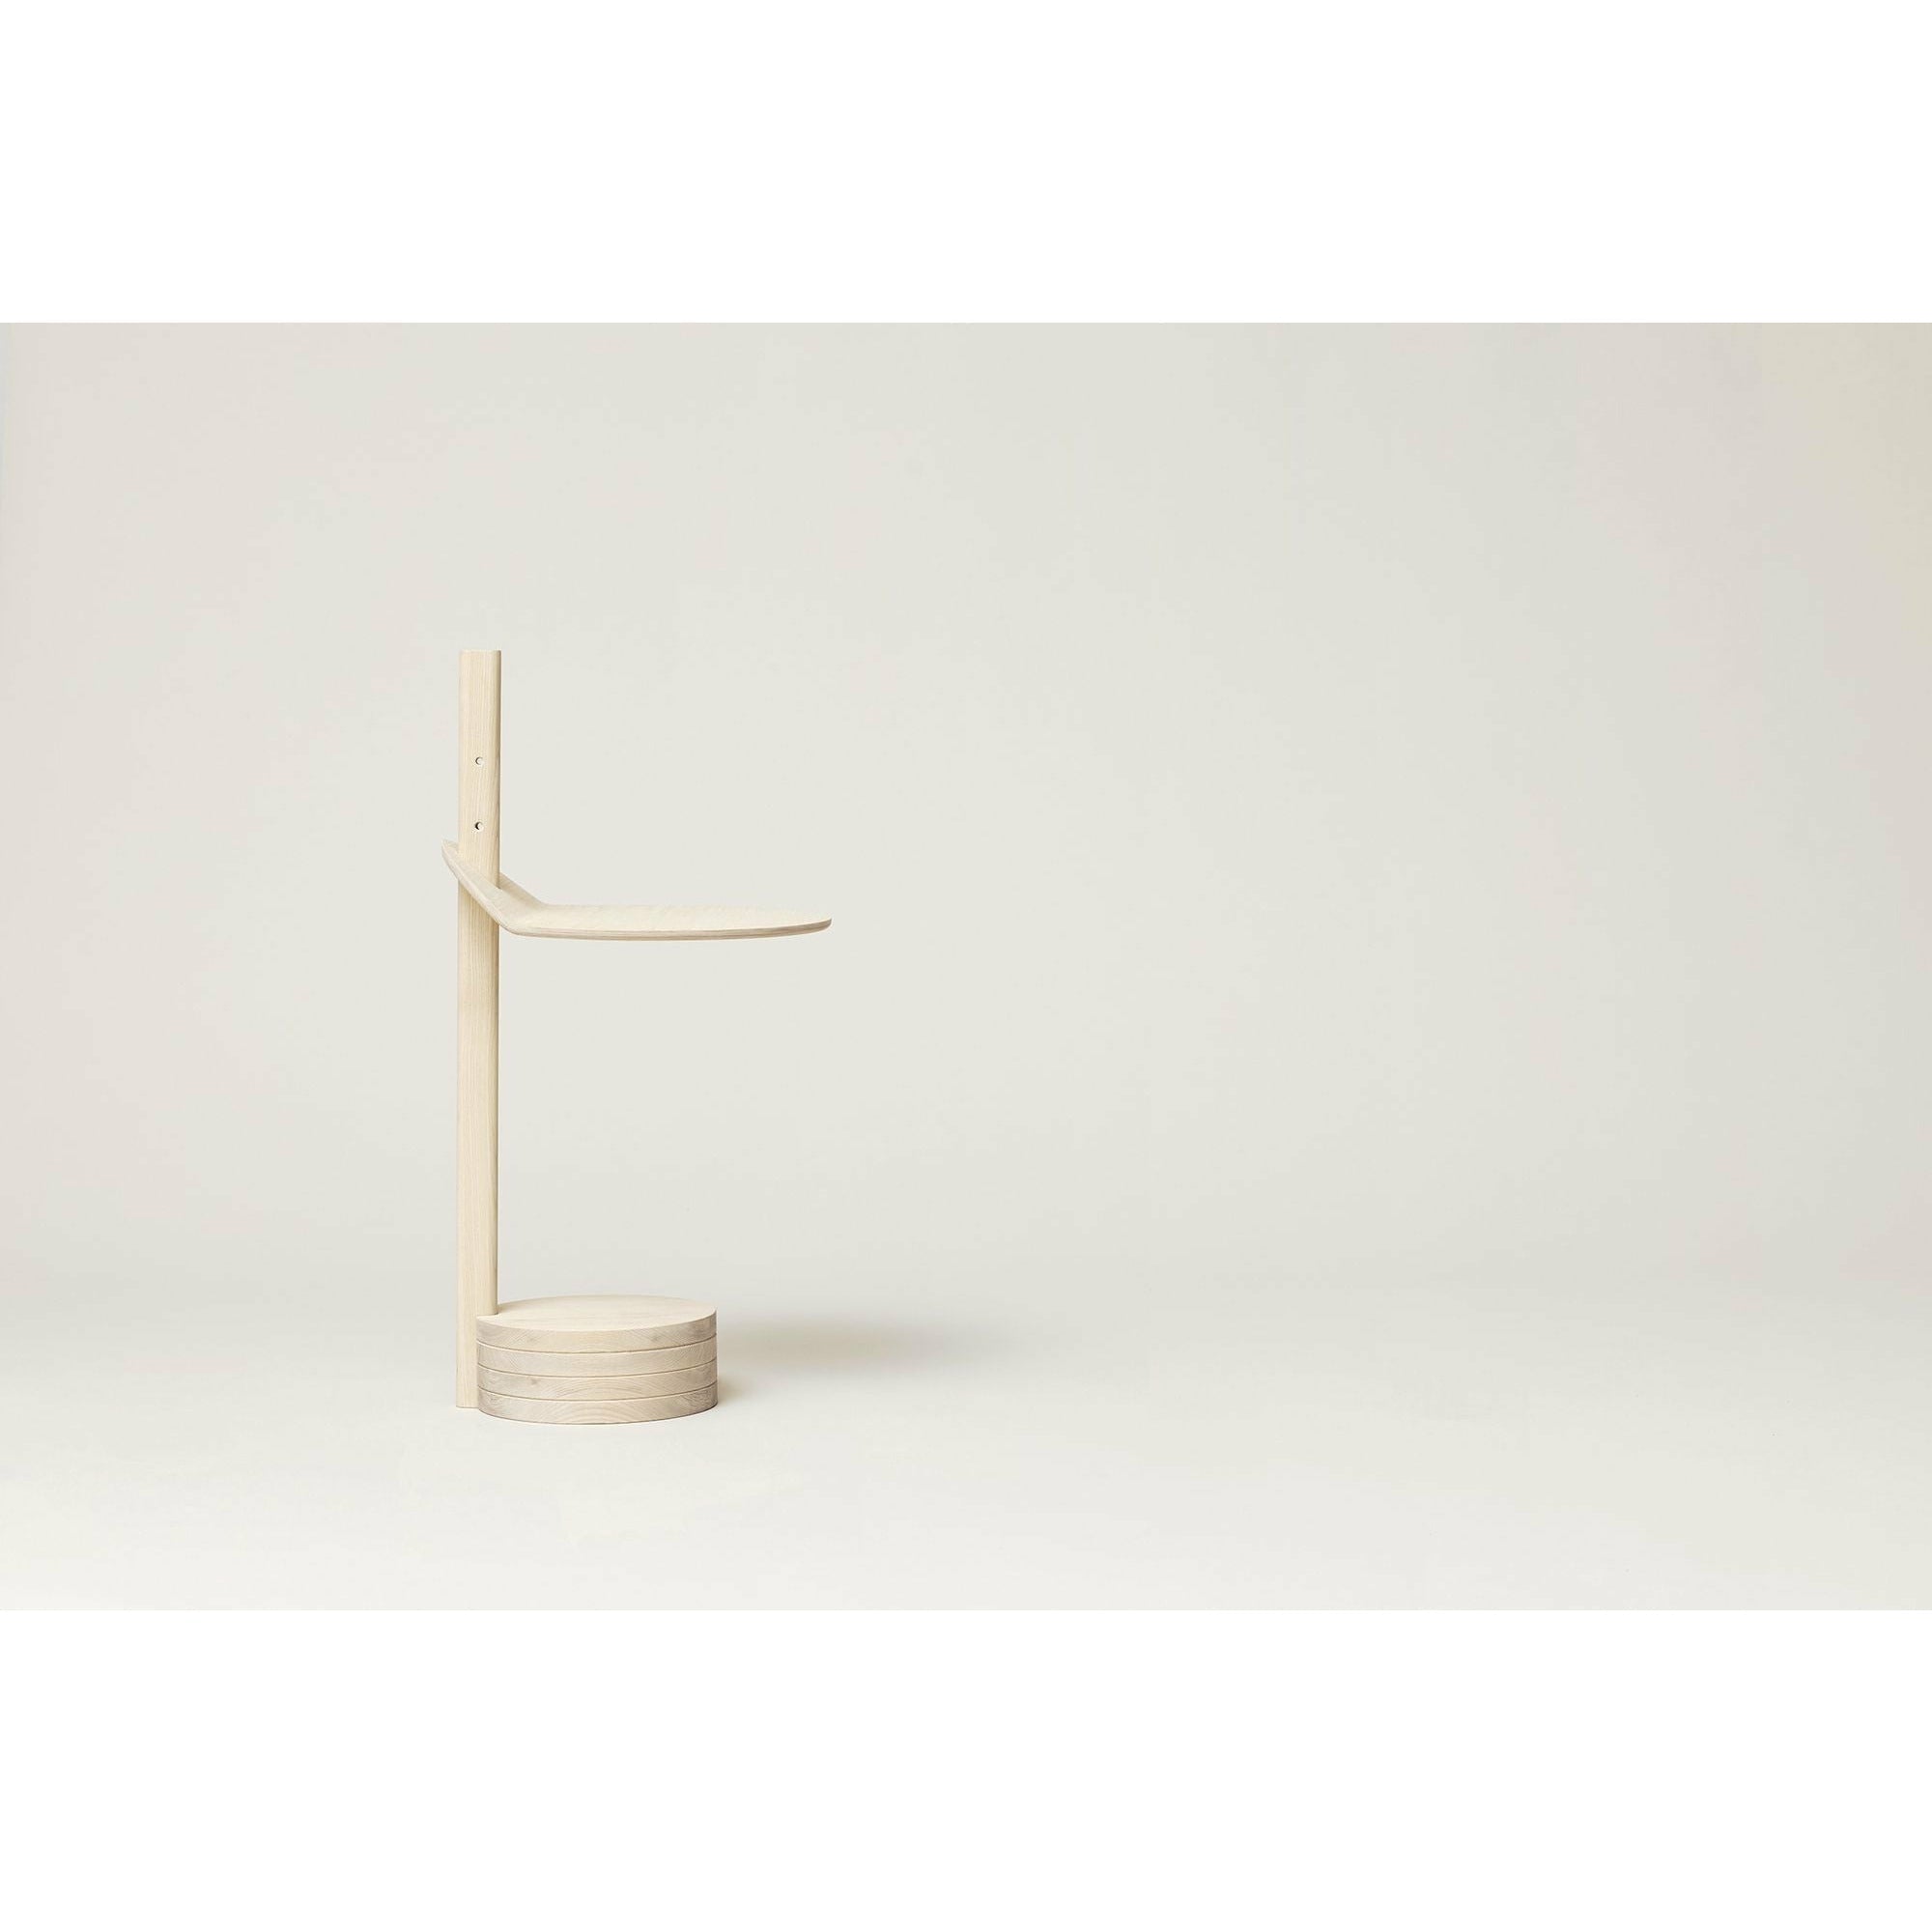 Form & Refine Stilk Side Table. Ash